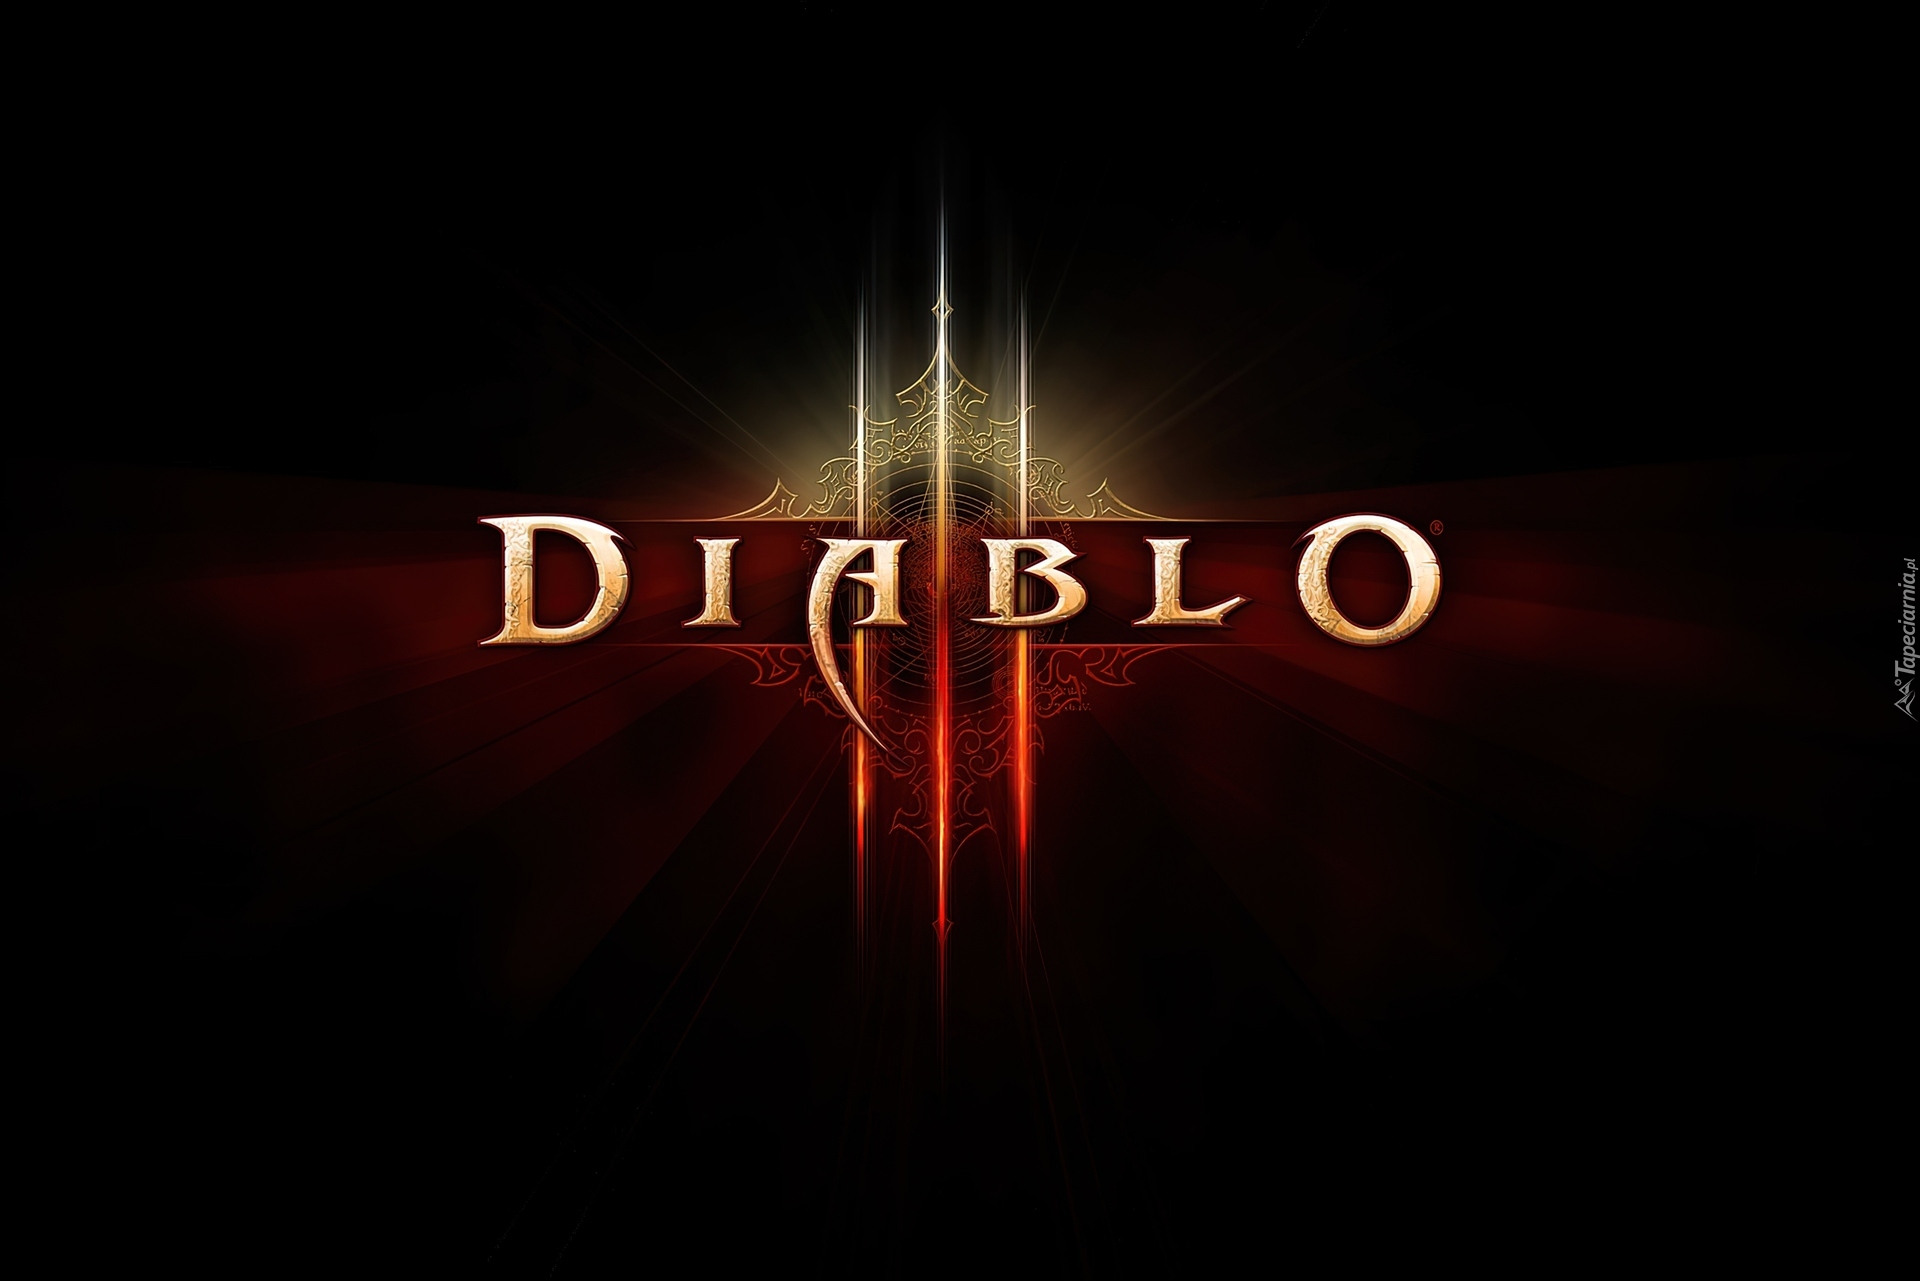 Logo, Diablo, III